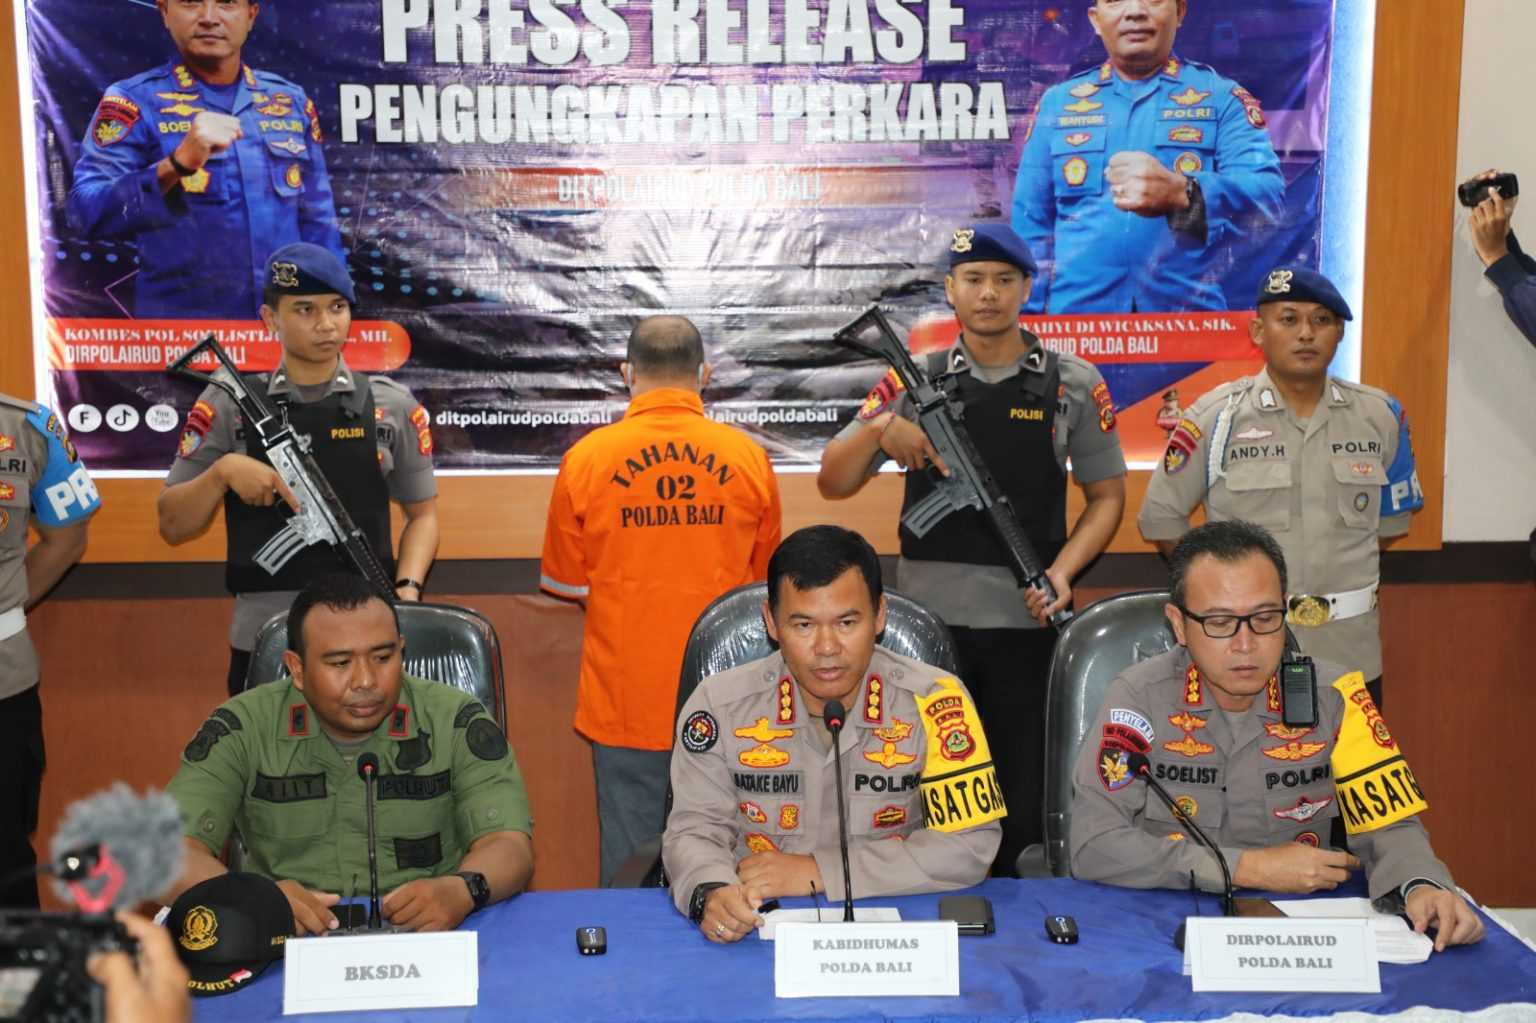 Konferensi pers oleh Polda Bali dan BKSDA pasca penangkapan Made Japa, pedagang daging penyu dari Kelurahan Benoa. | Foto: Laman Humas Polri